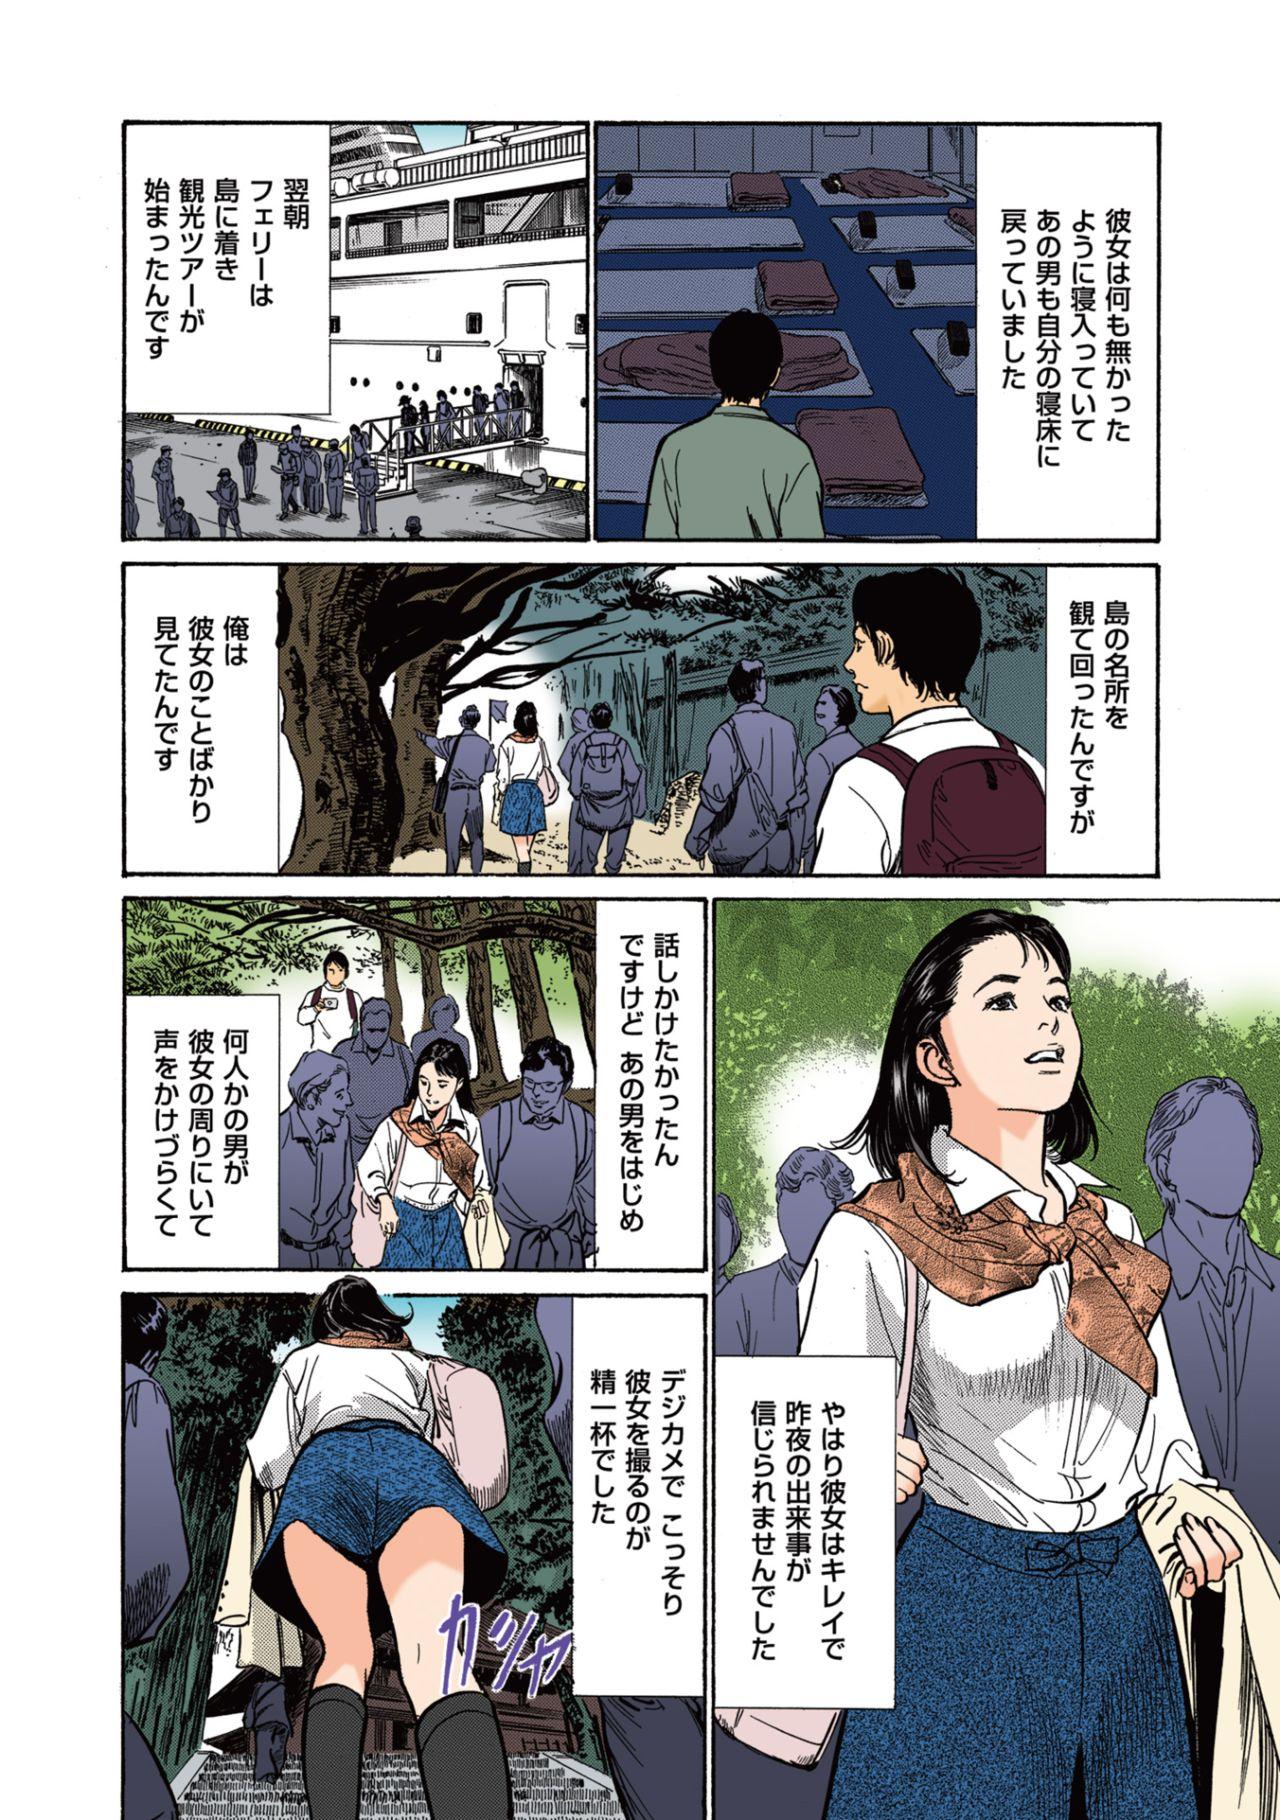 Bokep [Hazuki Kaoru] Hazuki Kaoru no Tamaranai Hanashi (Full Color Version) 1-1 Ex Gf - Page 10